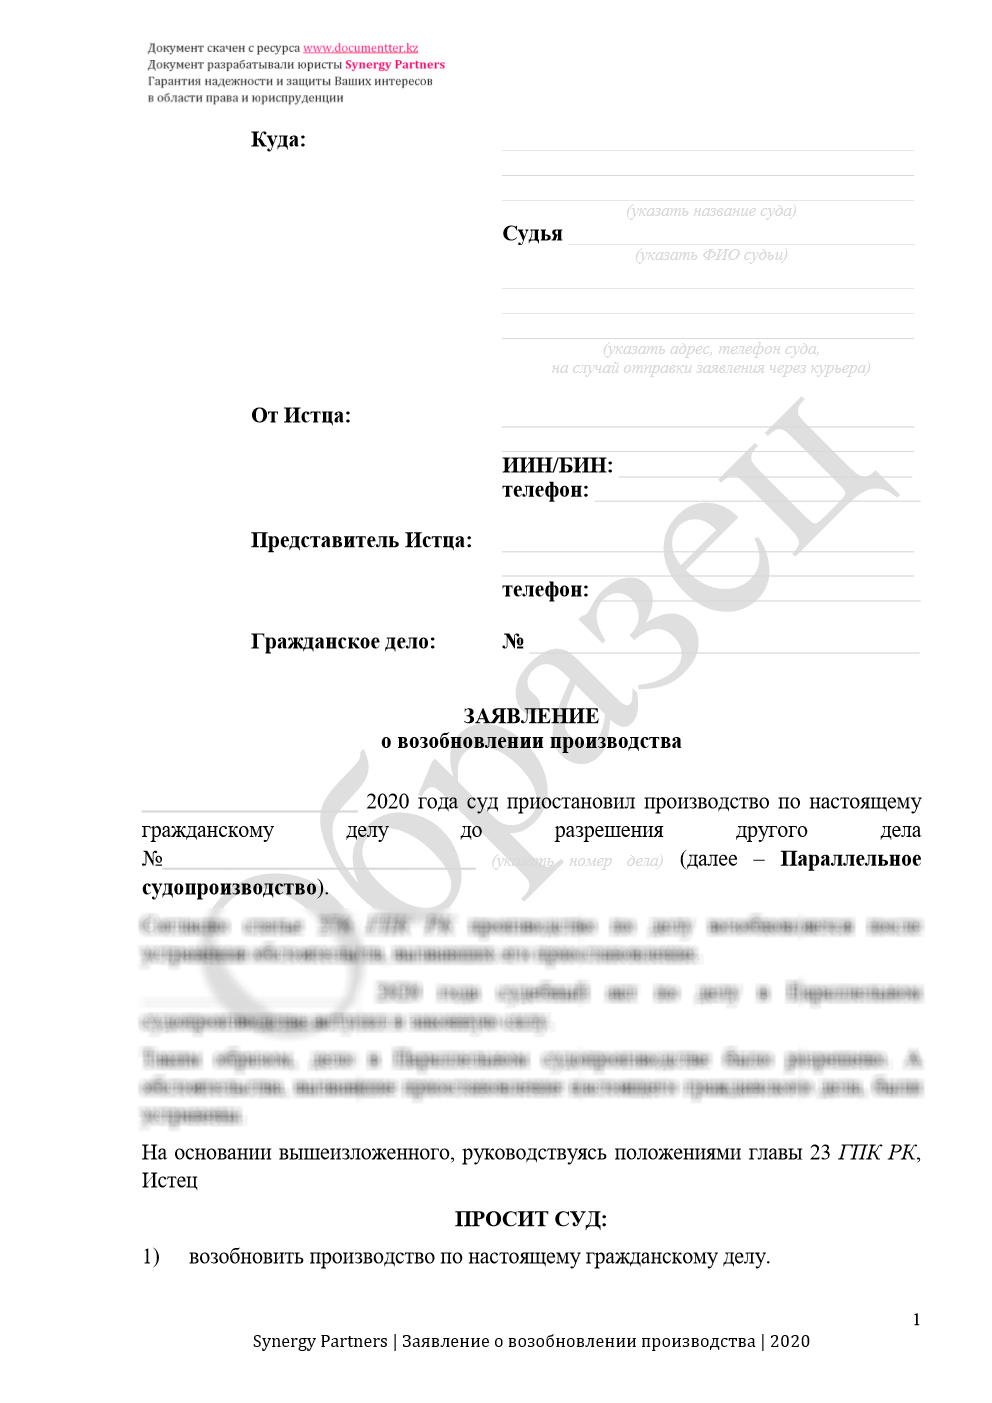 Заявление о возобновлении производства при параллельных делах 2 | documentter.kz в Казахстане 